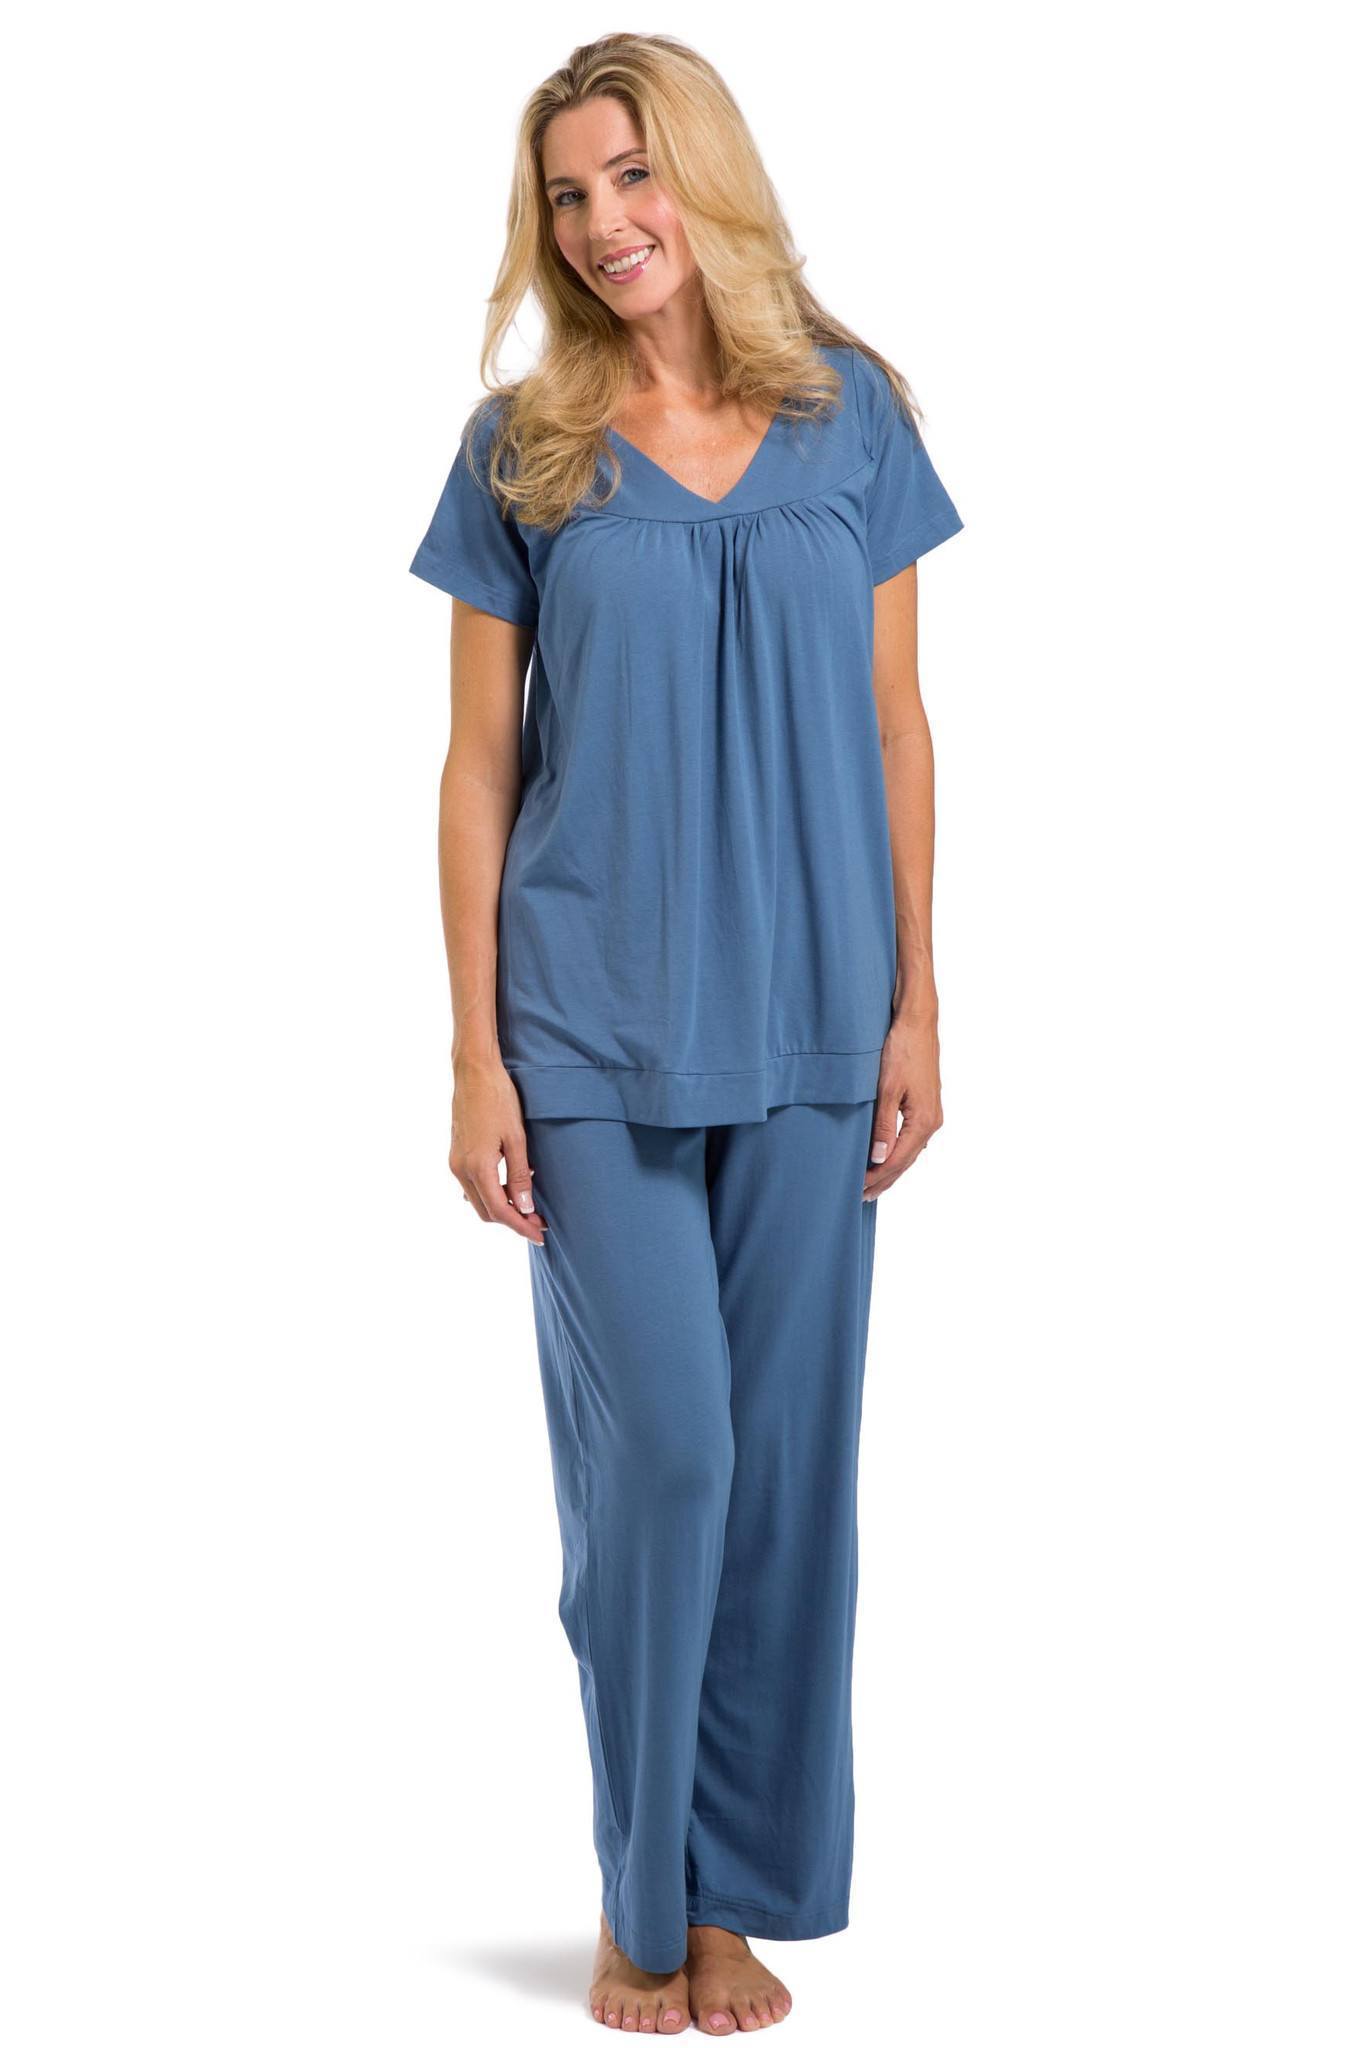 Women's Pajamas, Organic Cotton V-Neck Pajama Set